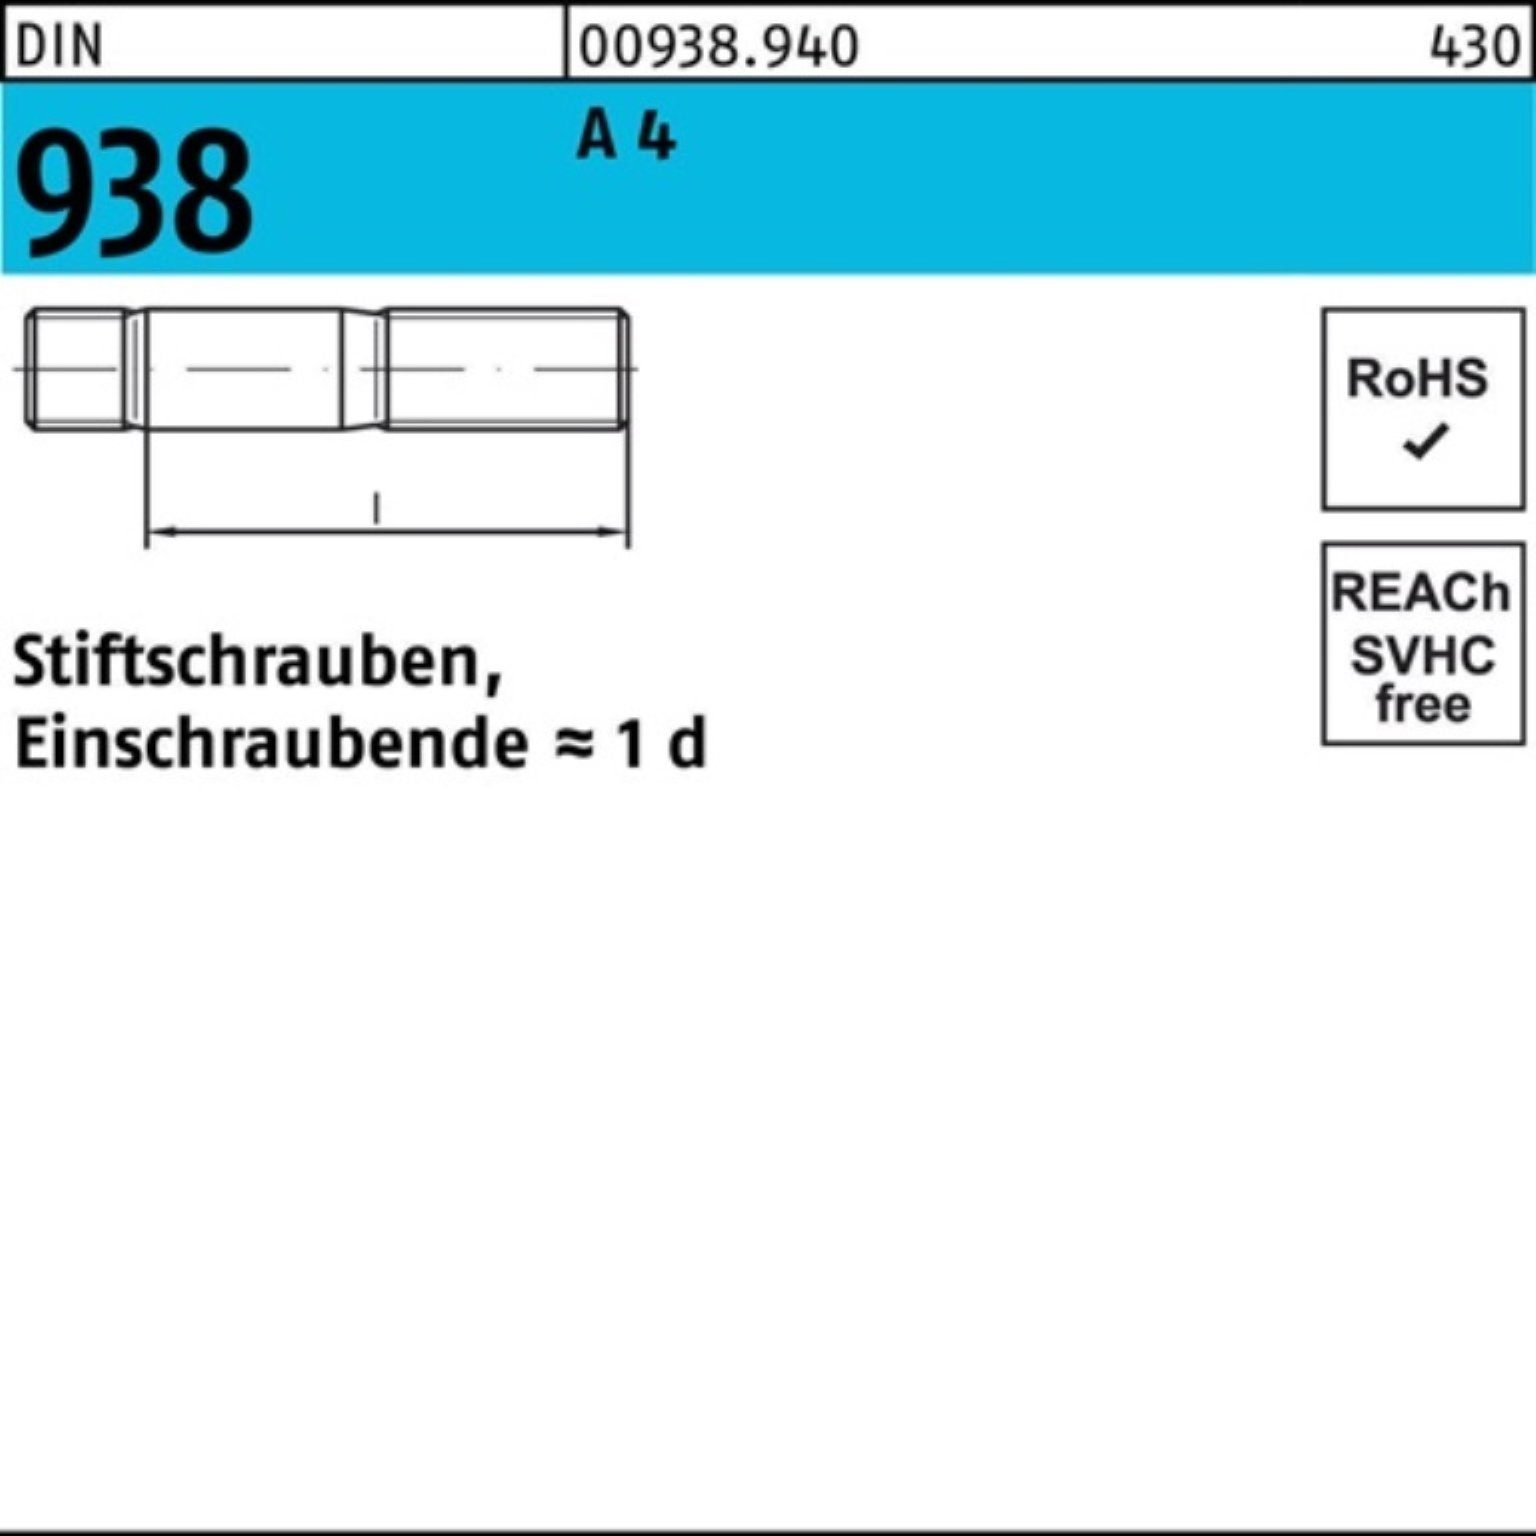 Reyher Stiftschraube 100er Pack Stiftschraube 938 DIN 4 Stif 50 4 Stück DIN A M8x A 938 25